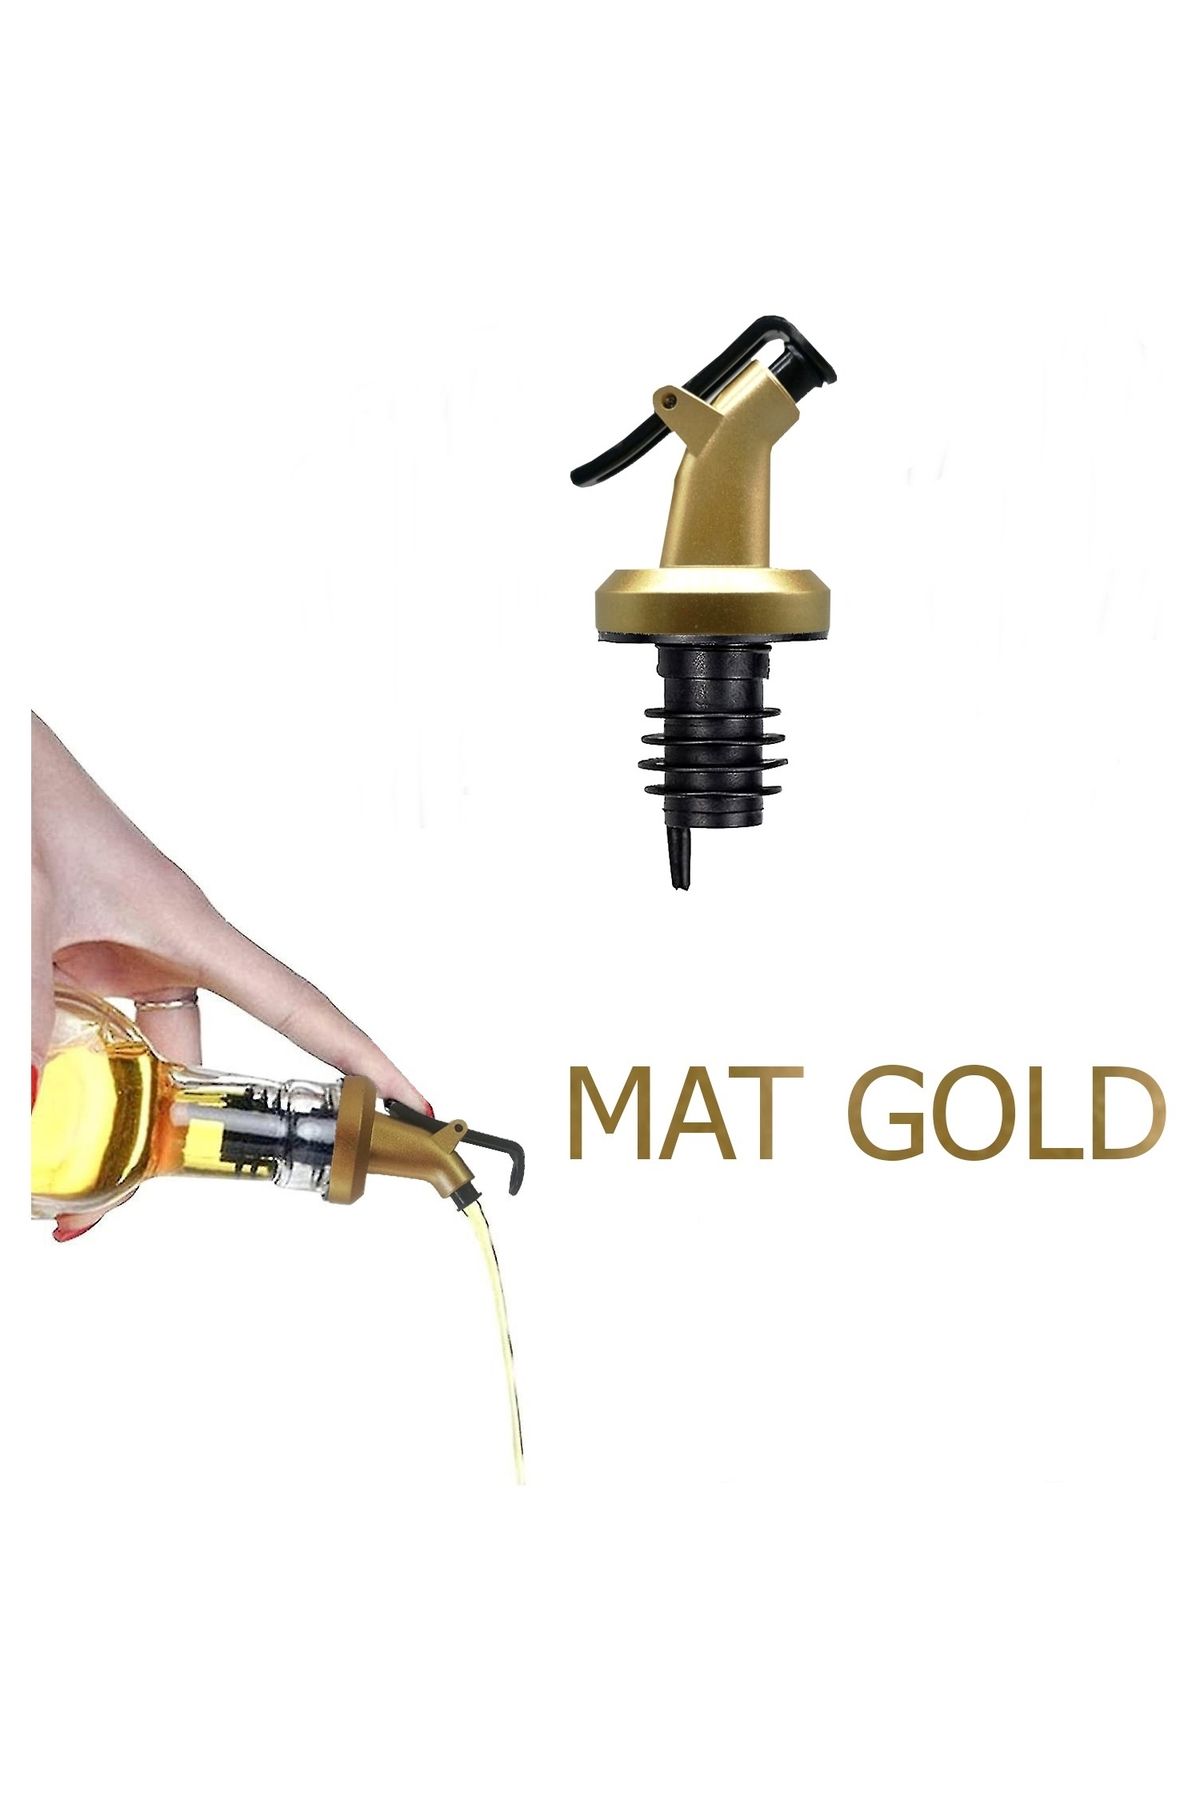 LOVYCO Mat Gold Sızdırmaz Yağdanlık Tıpası (yağdanlık başlığı, tapa, tıpa, kapaklı şişe ucu)